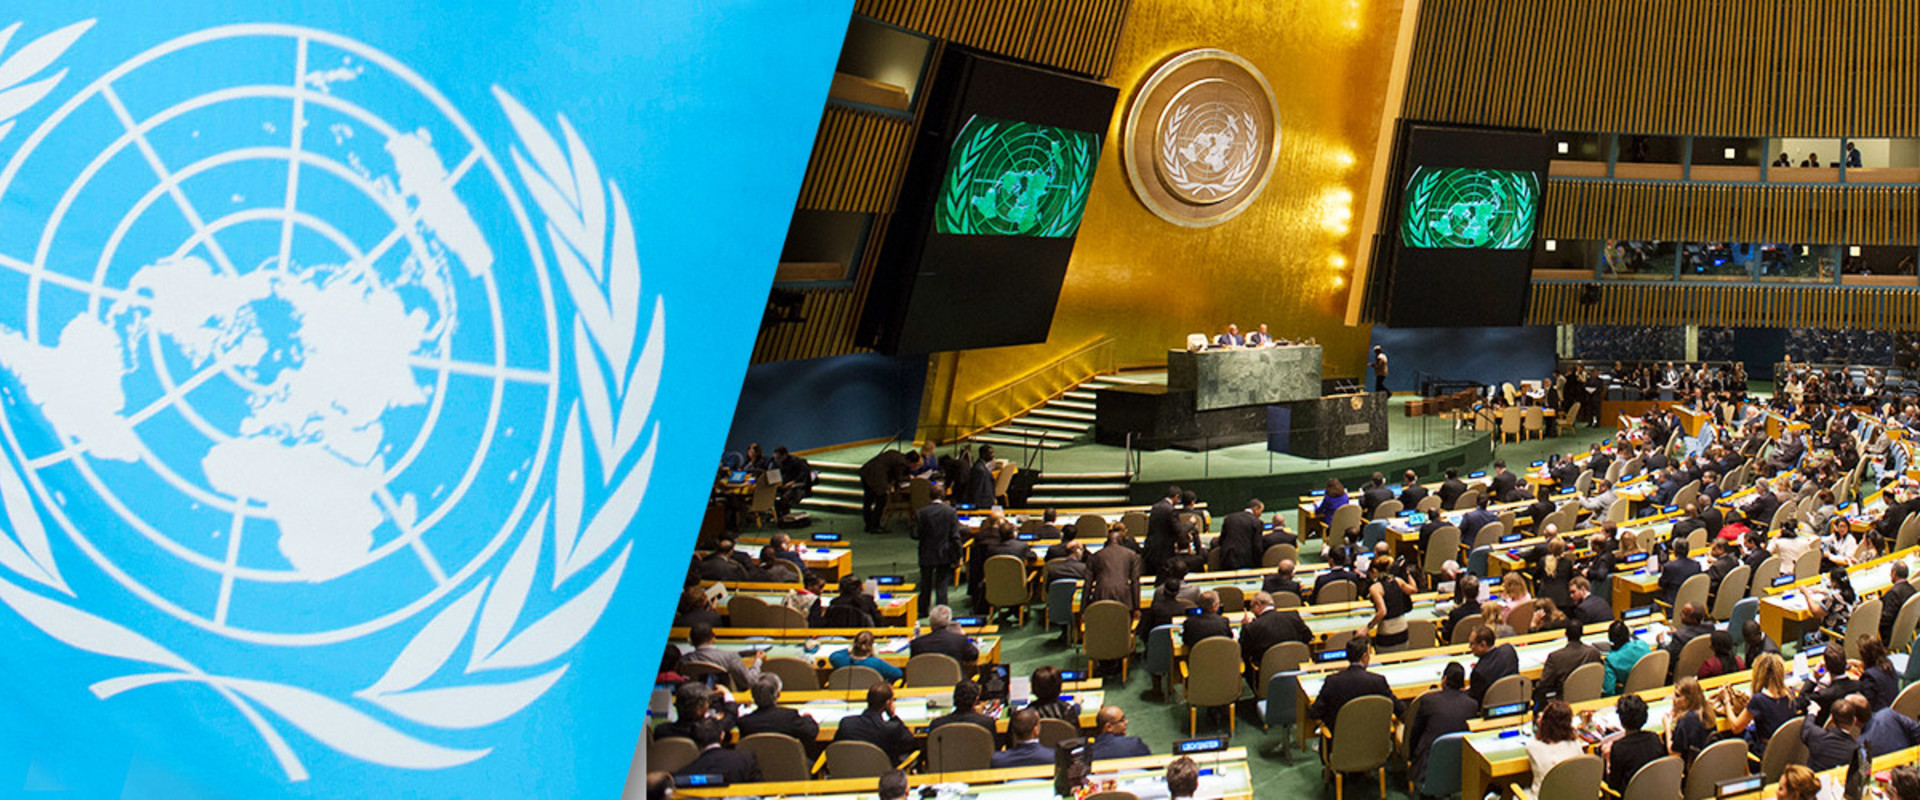 1992 г оон. Генеральная Ассамблея и совет безопасности ООН. Международная конференция ООН В 1994 В Каире. Генеральная Ассамблея ООН 1990 год. Генеральная Ассамблея ООН 1970.